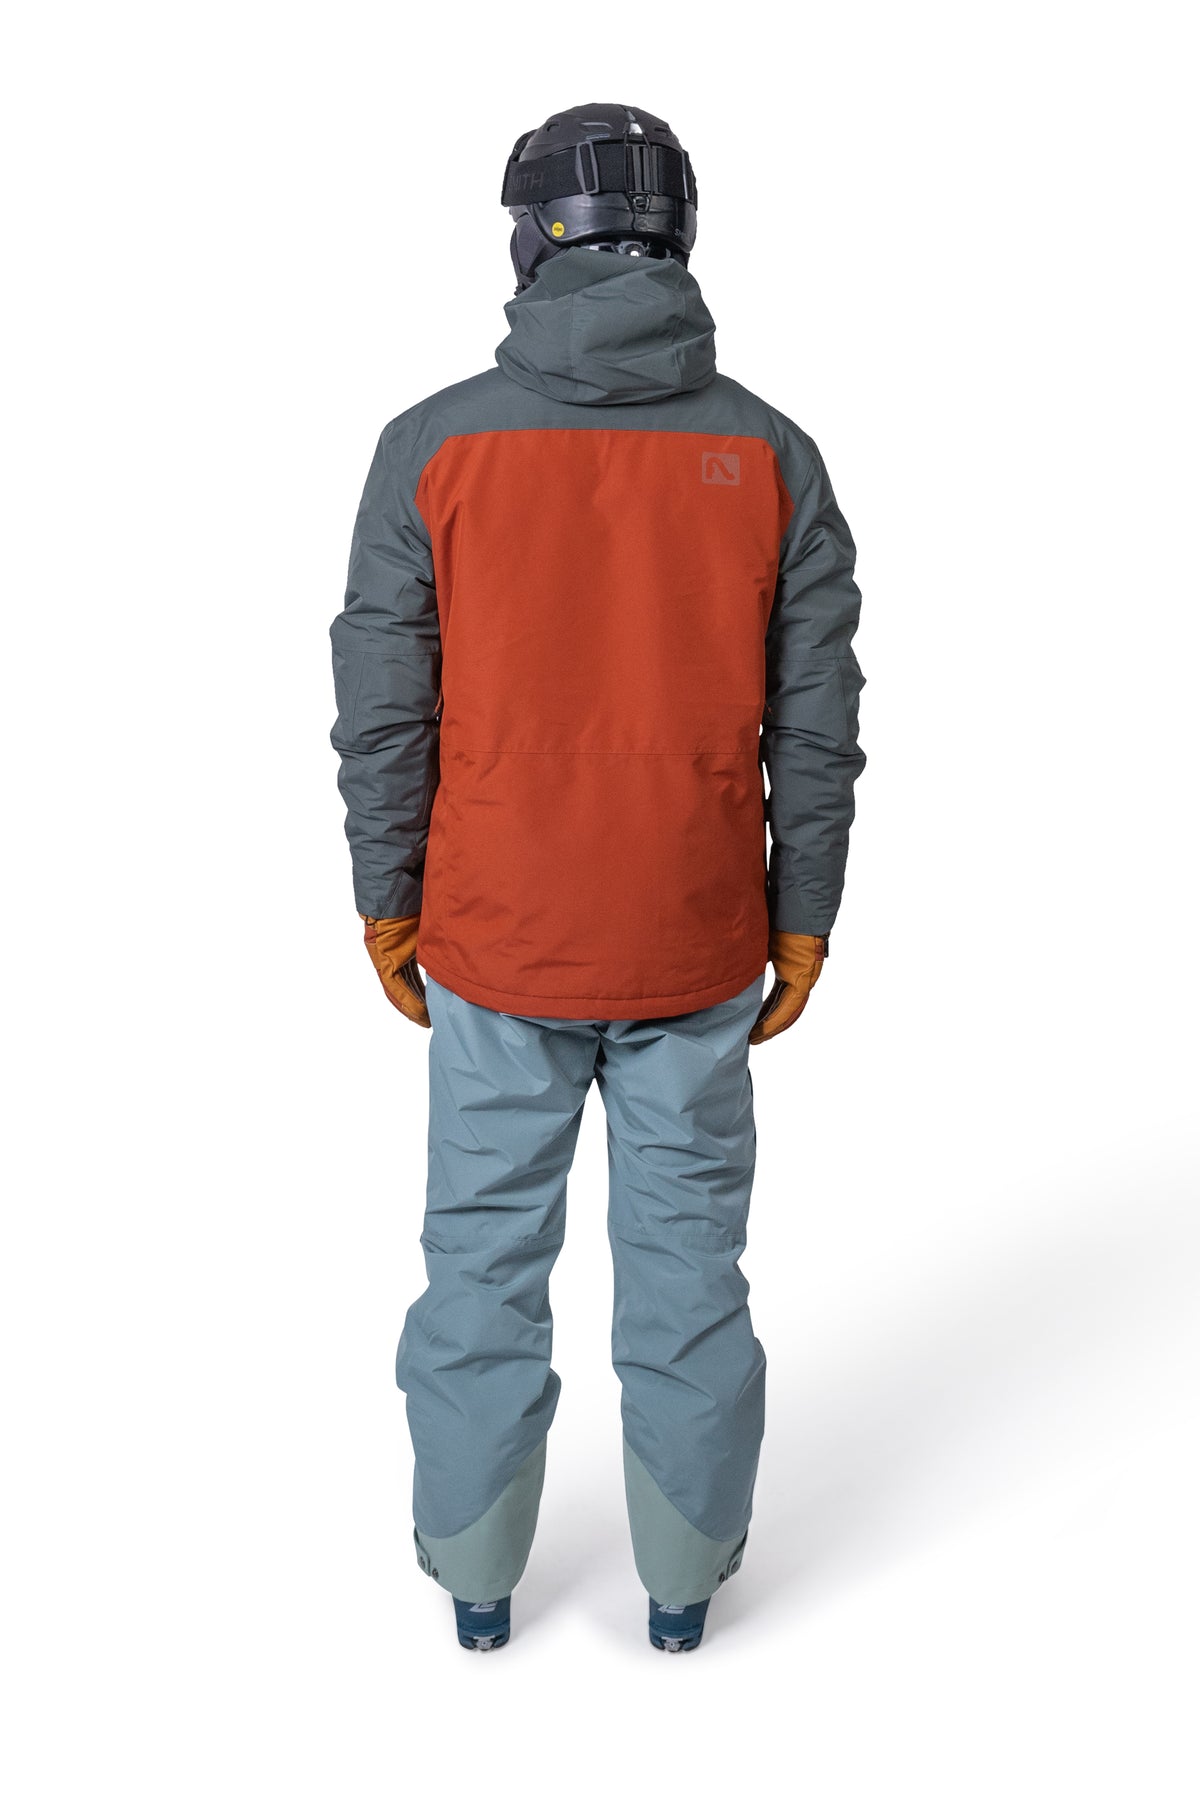 Roswell Jacket - Men's Ski Jacket | Flylow Gear